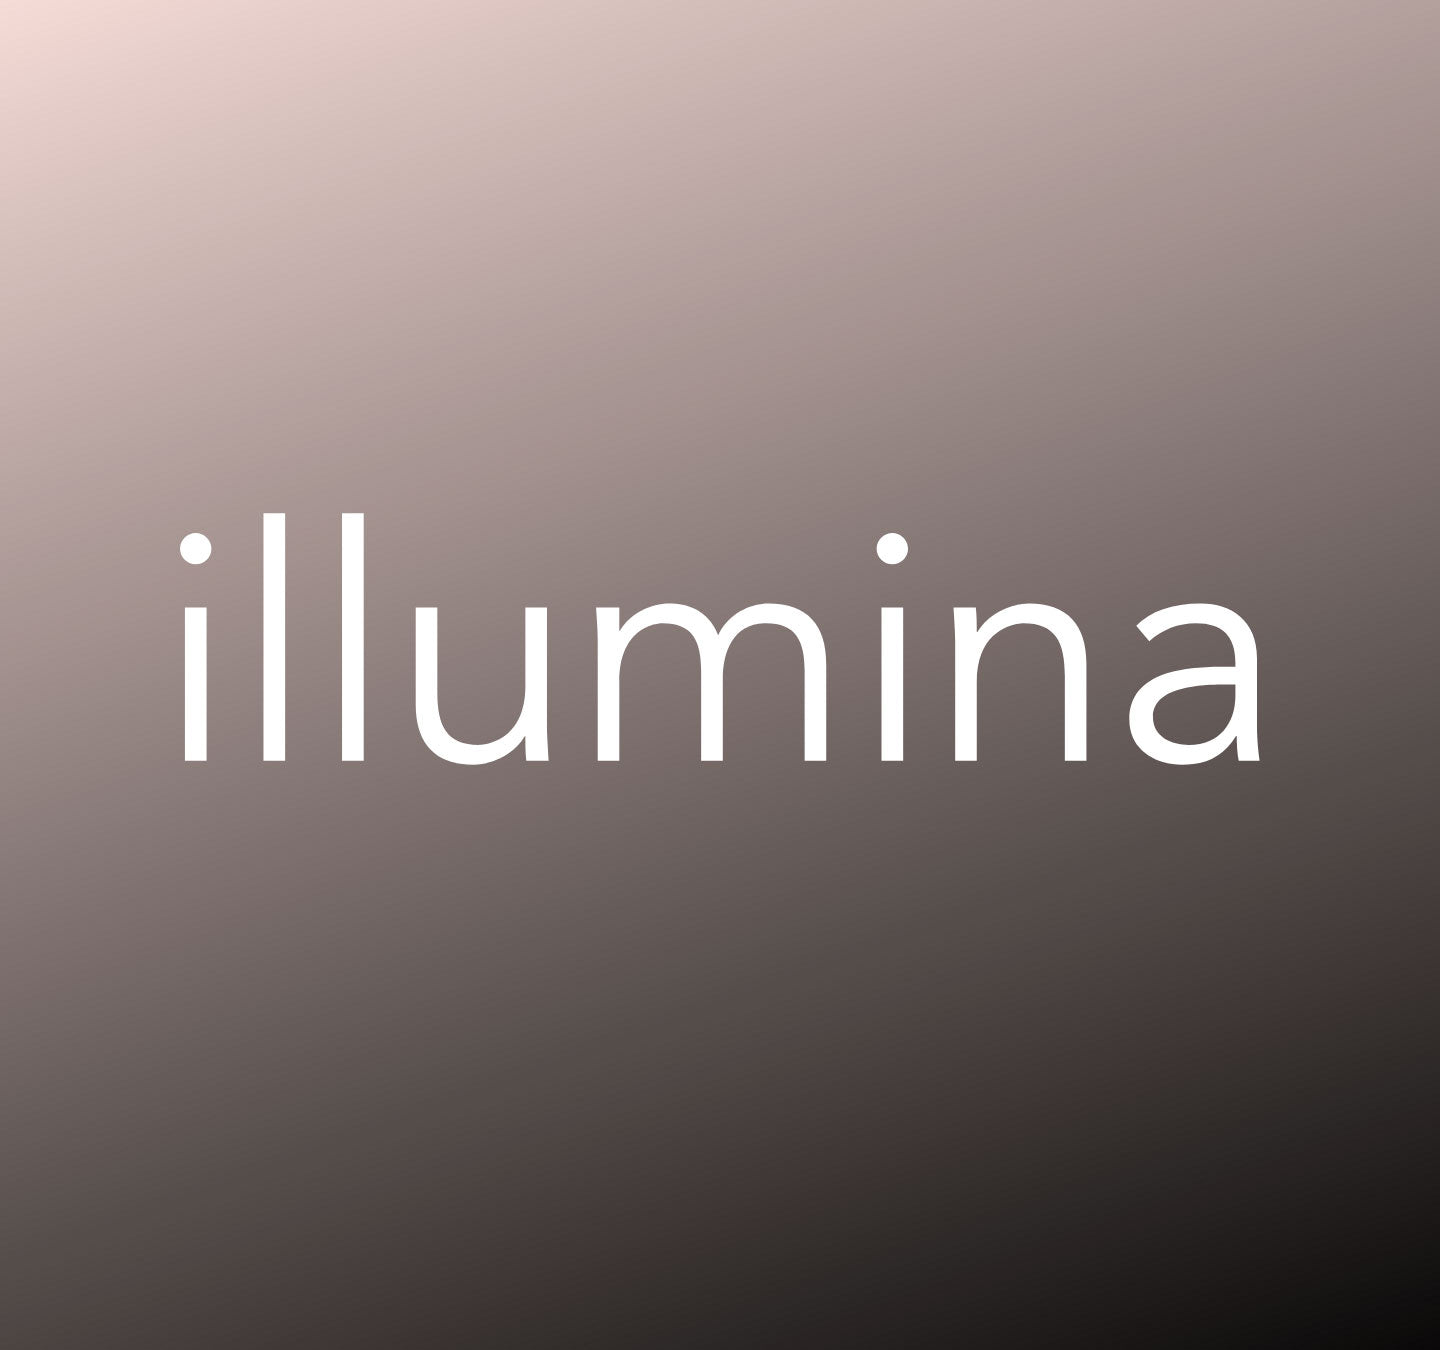 Announcing: Partnership with Illumina